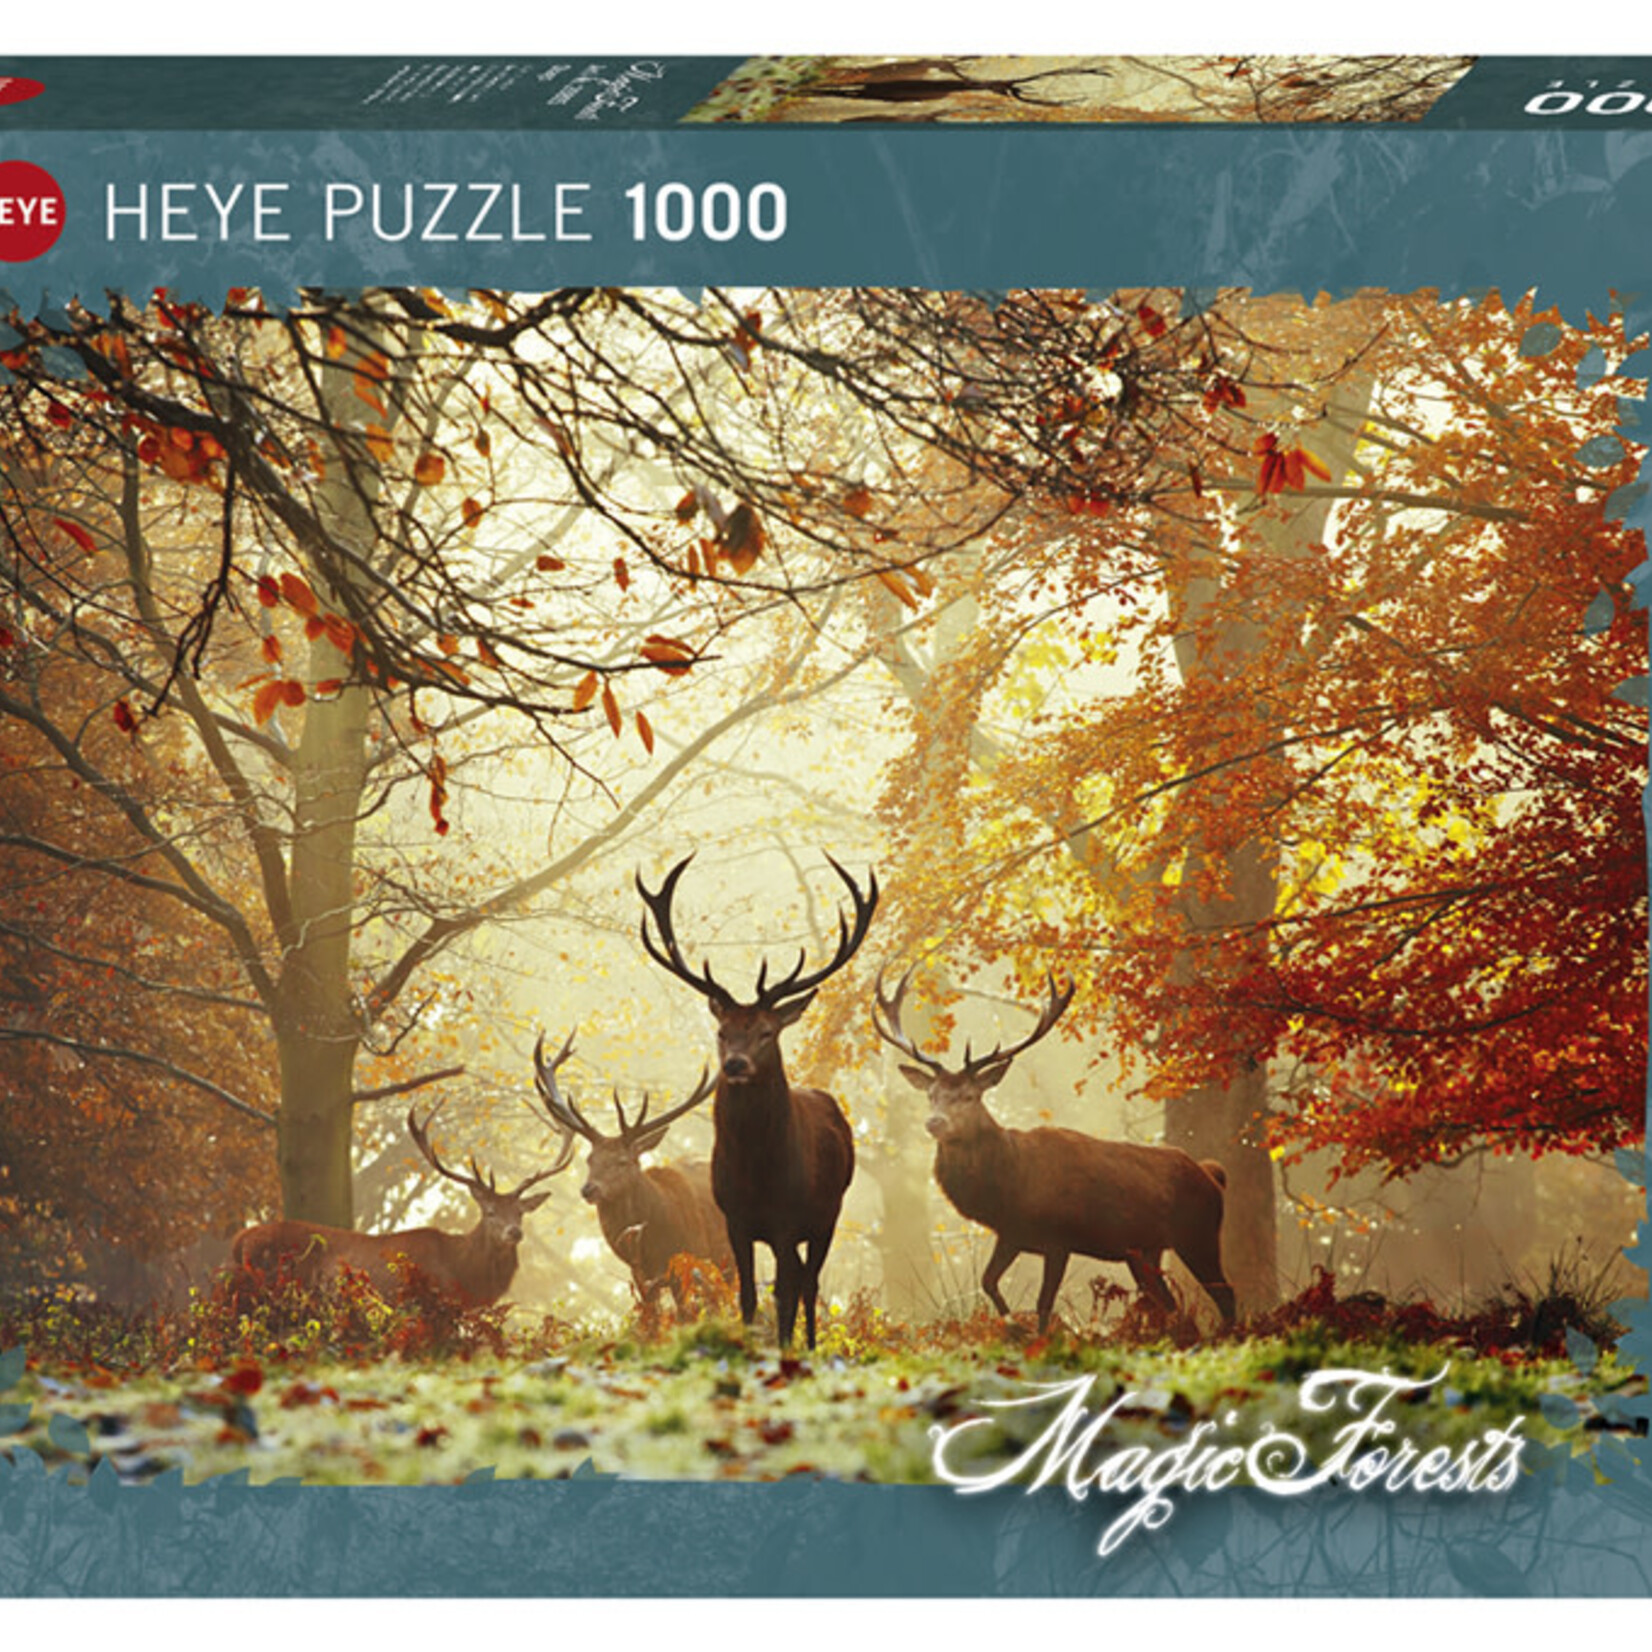 Heye Heye 1000 - Magic Forests - Stags